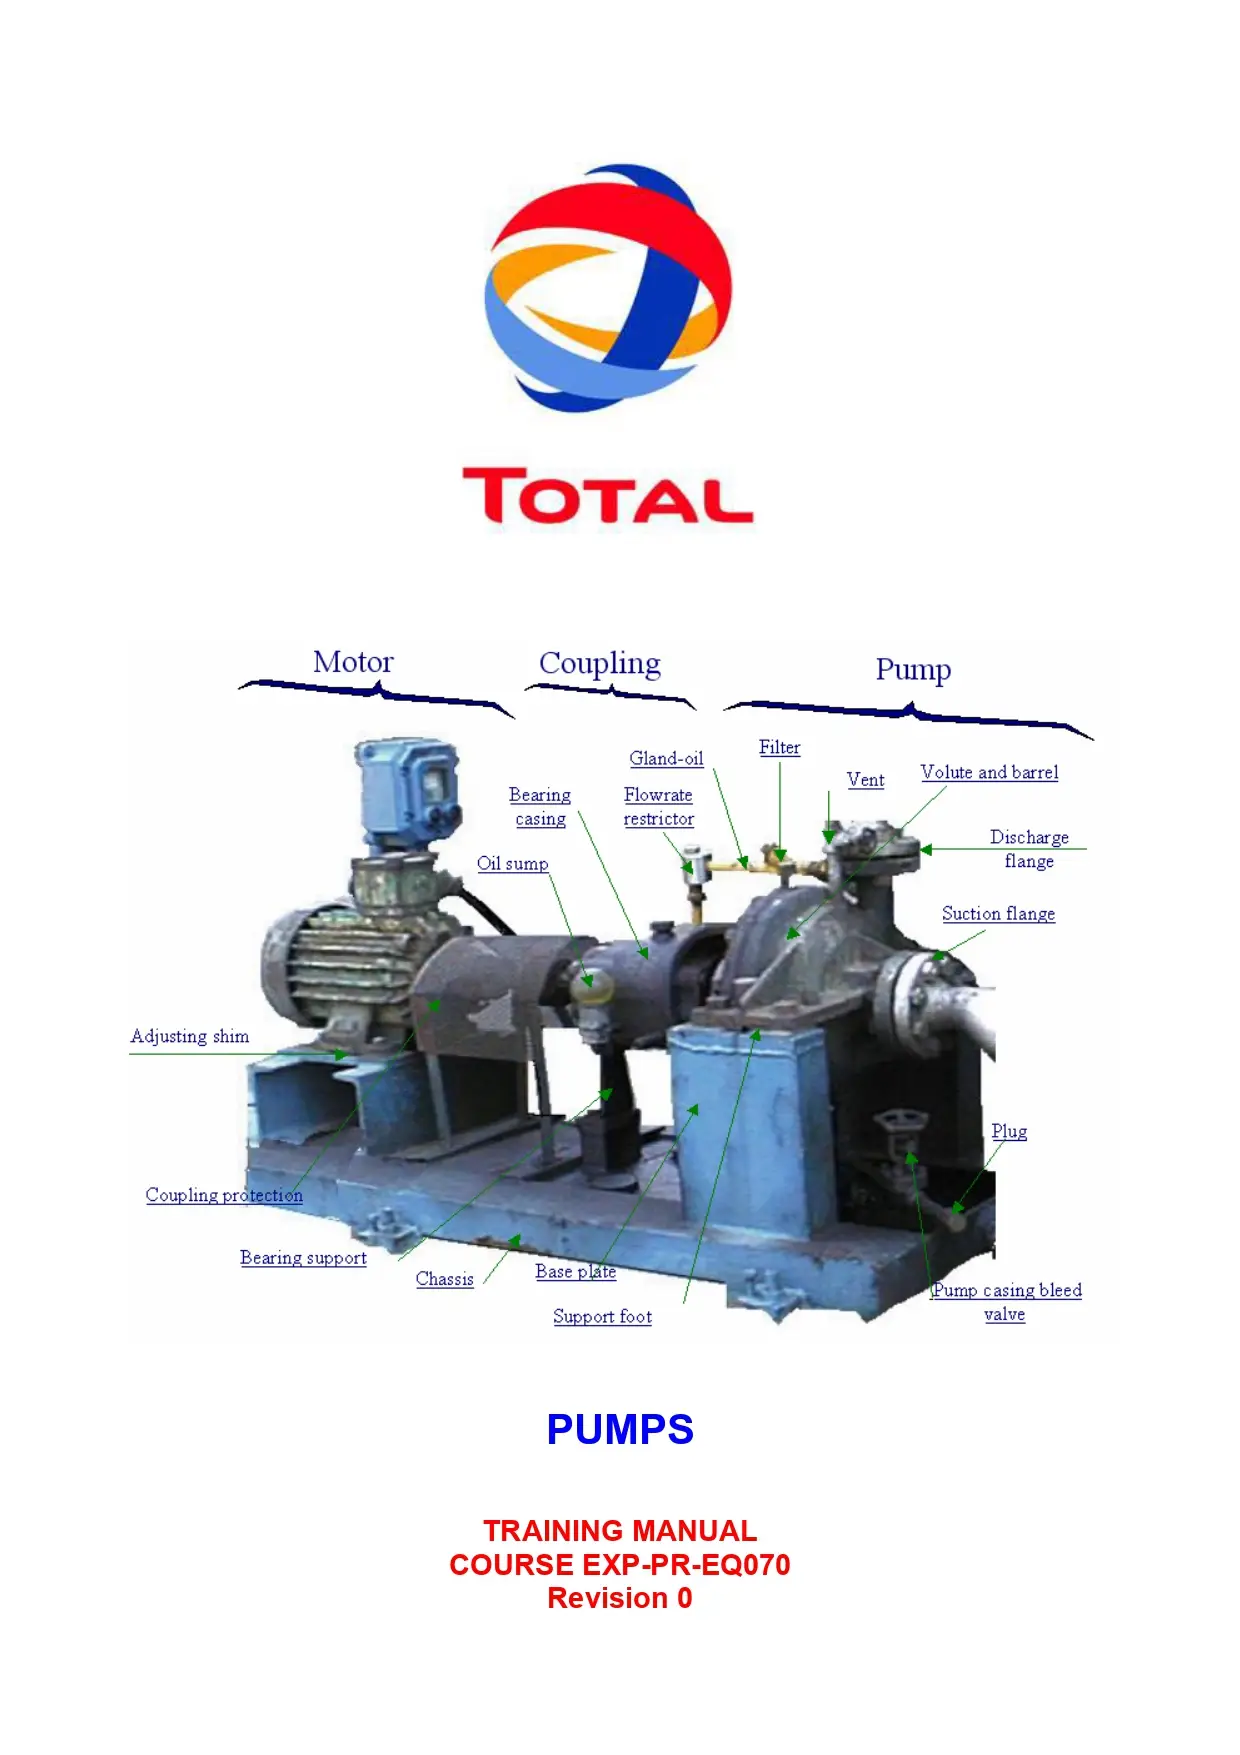 Pumps: Training Manual Course EXP-PR-EQ070 Revision 0